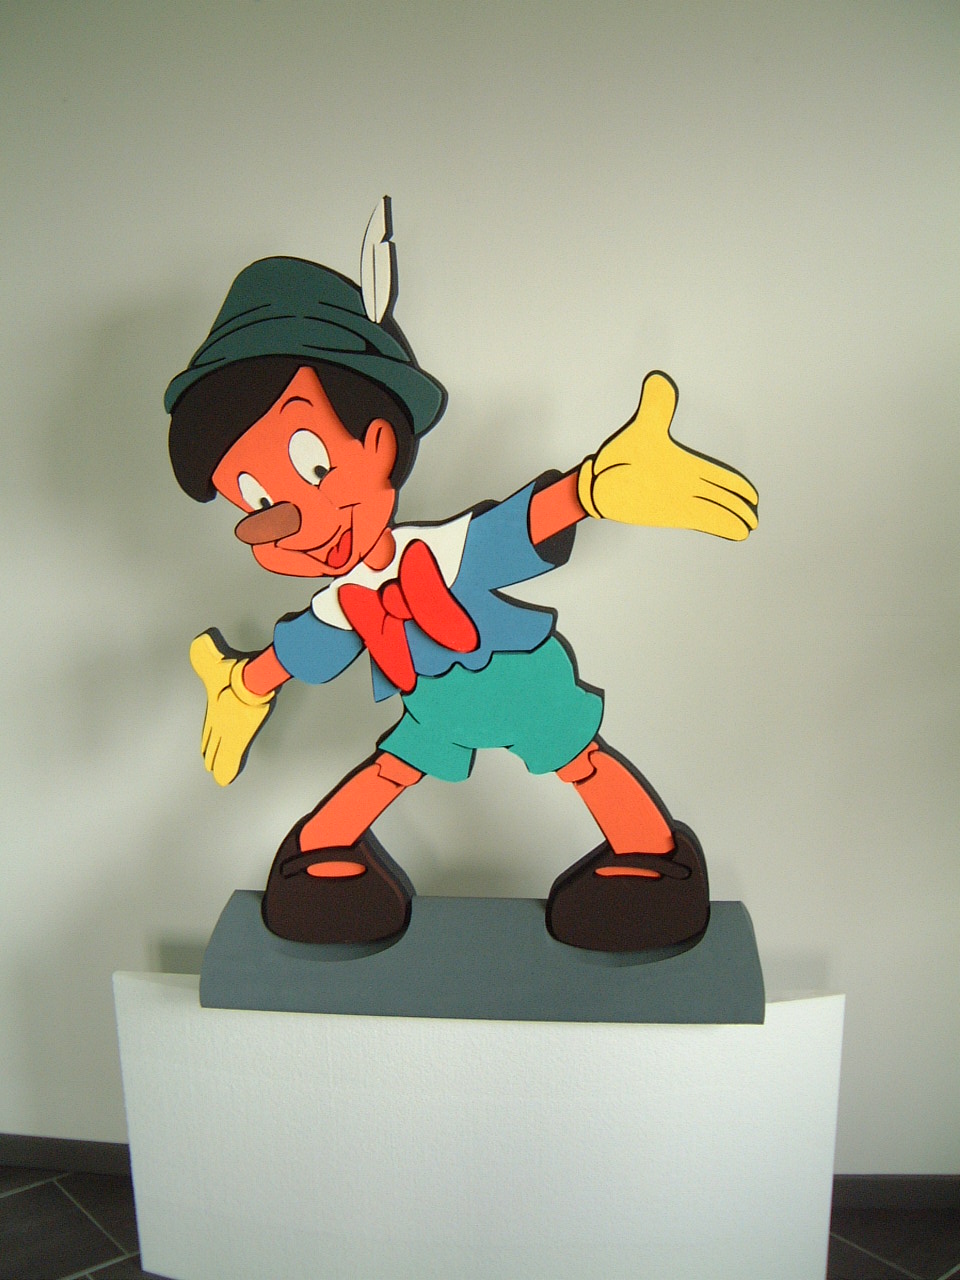 Pinocchio1